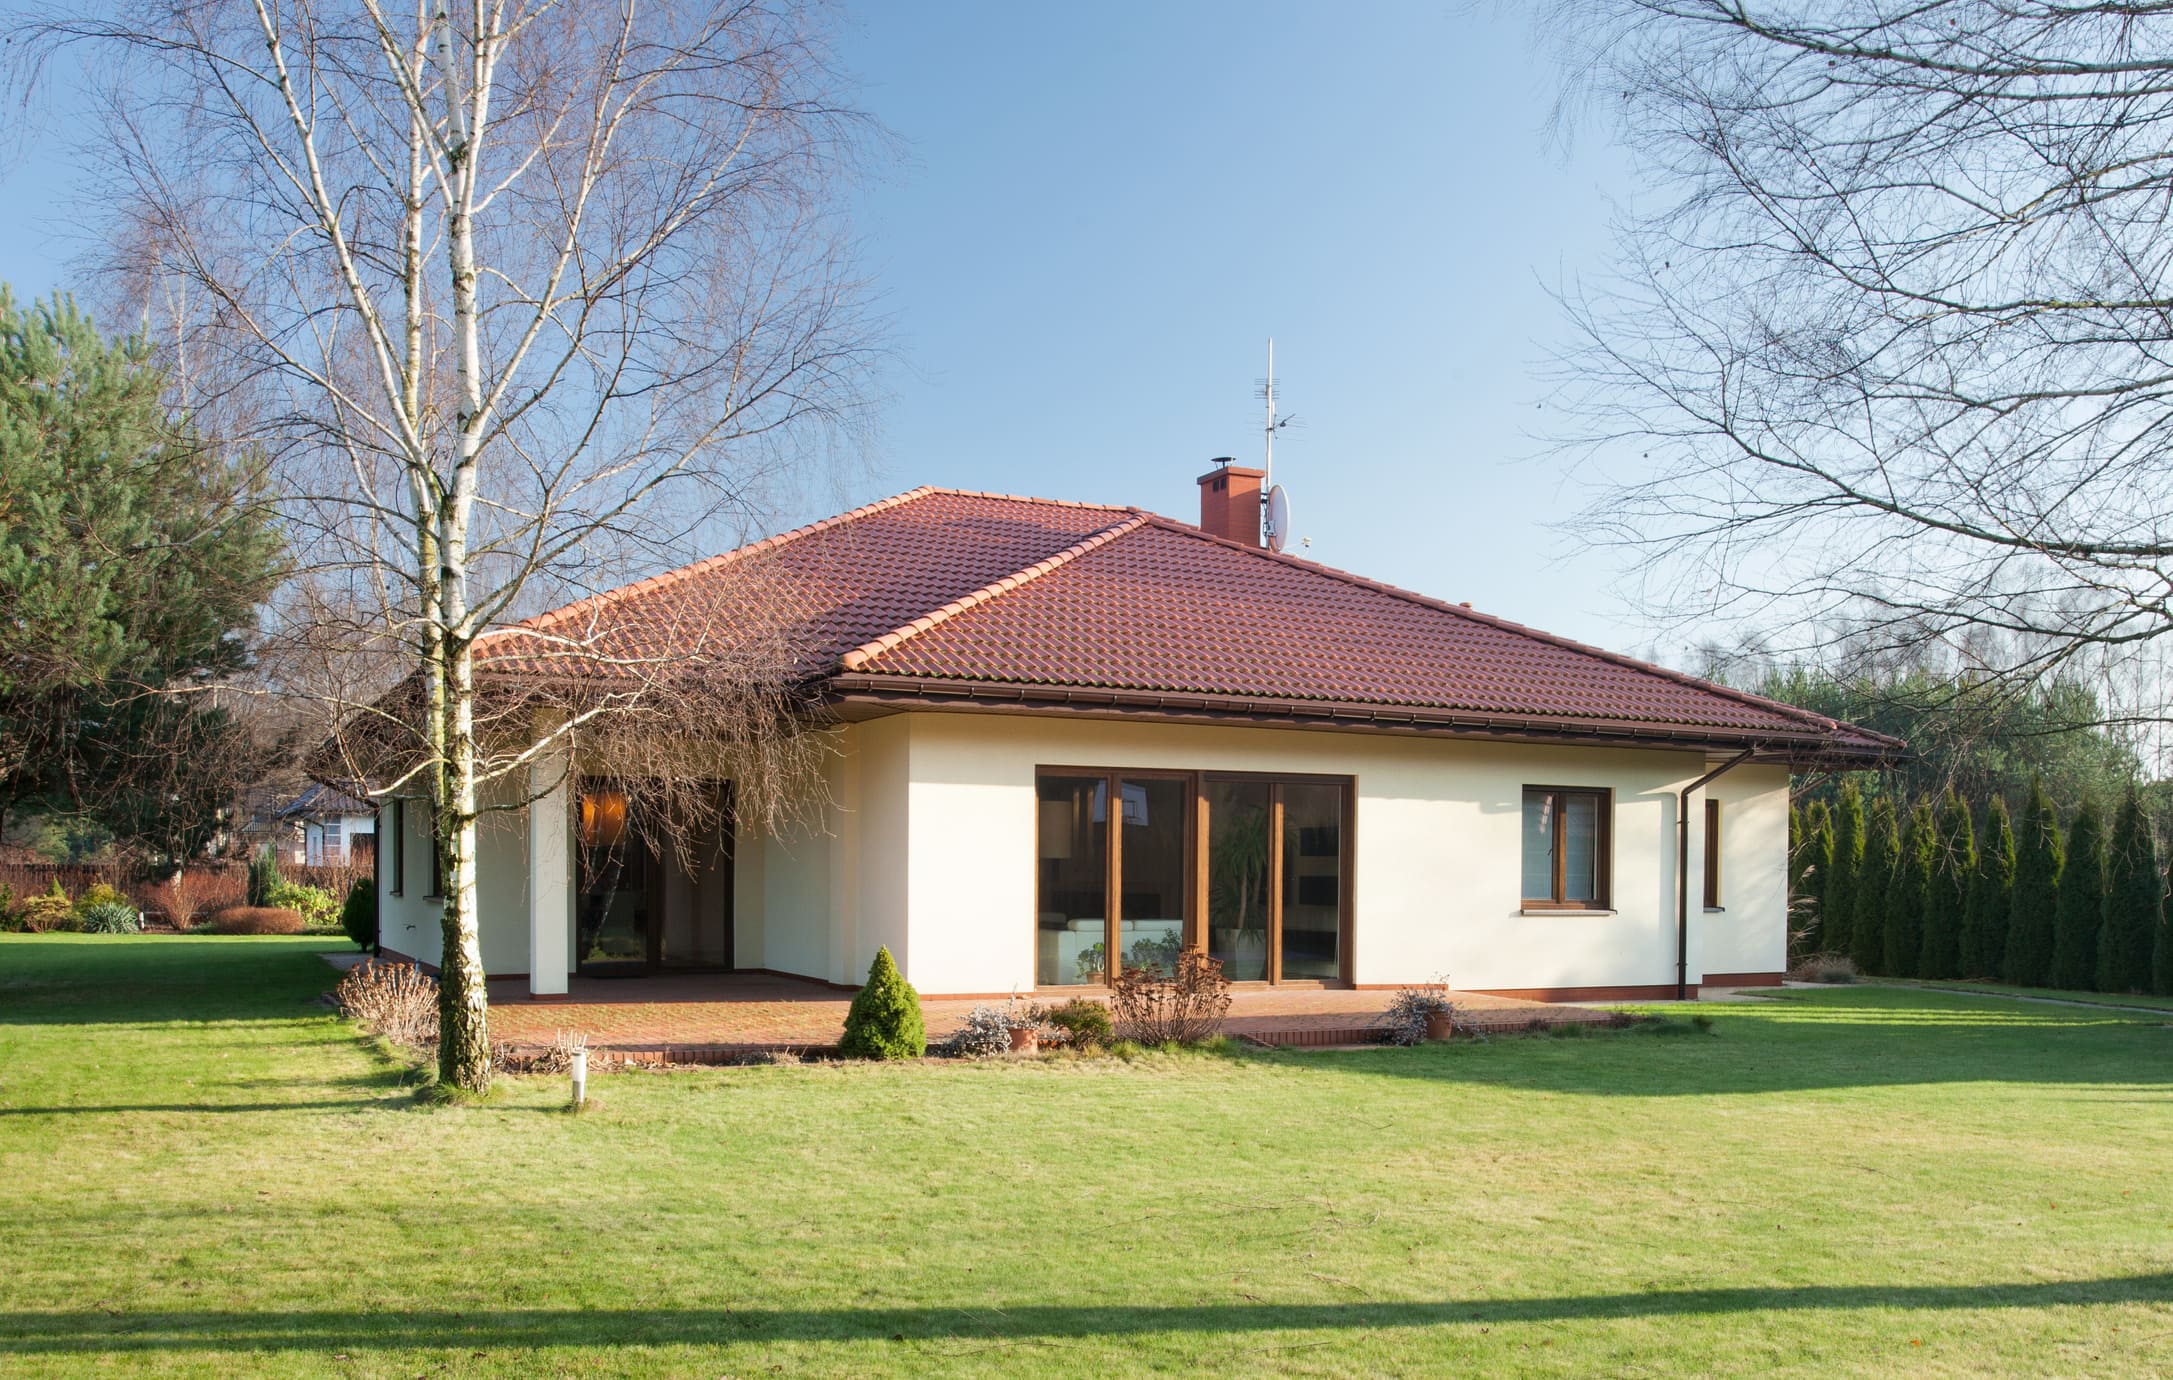 casa com telhado triangular e grama do lado de fora